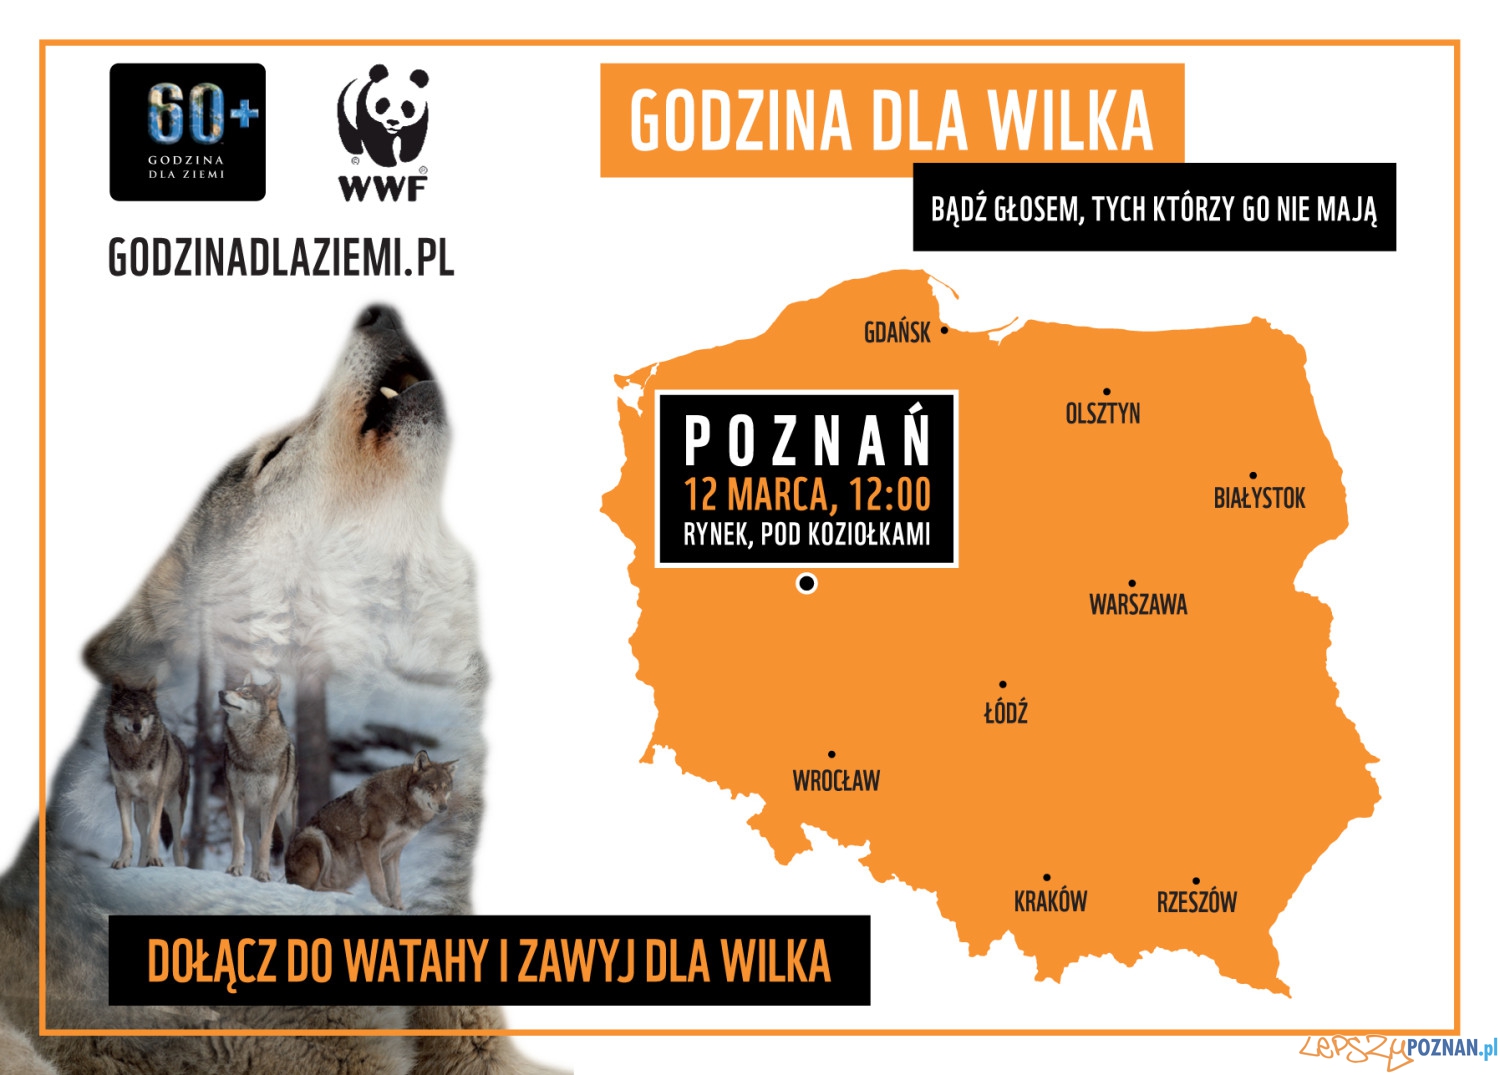 Dołącz do watahy, zawyj dla wilka - akcja WWF Polska 2016